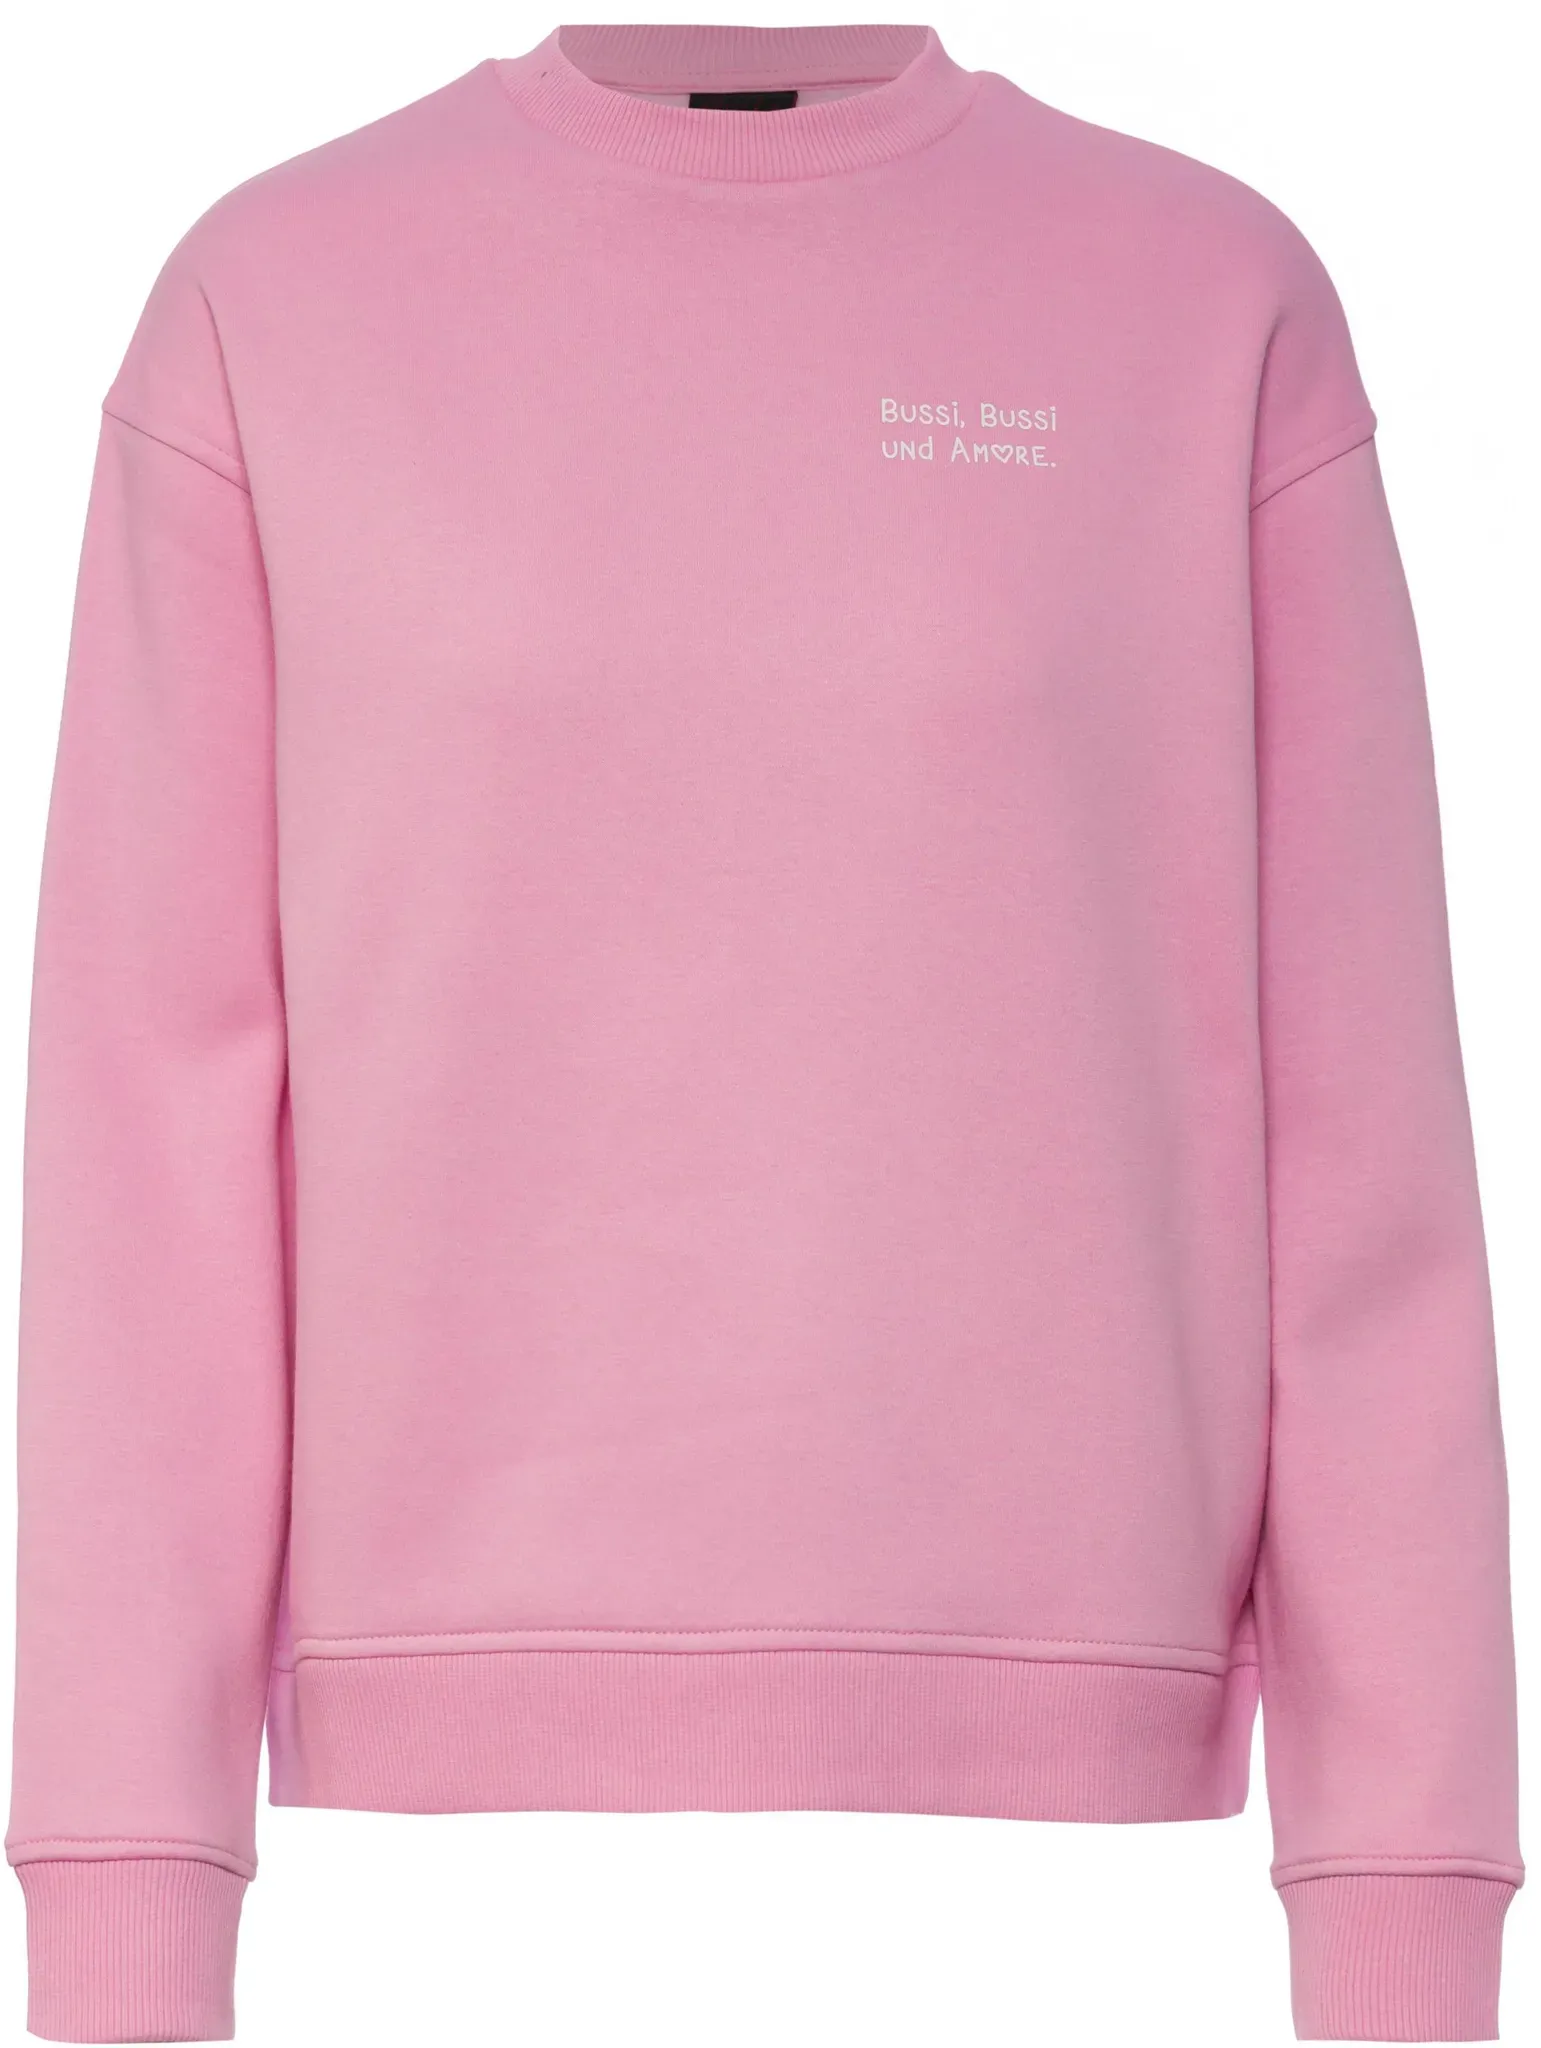 Kleinigkeit Bussi Bussi Sweatshirt Damen in bubble pink, Größe S - rosa